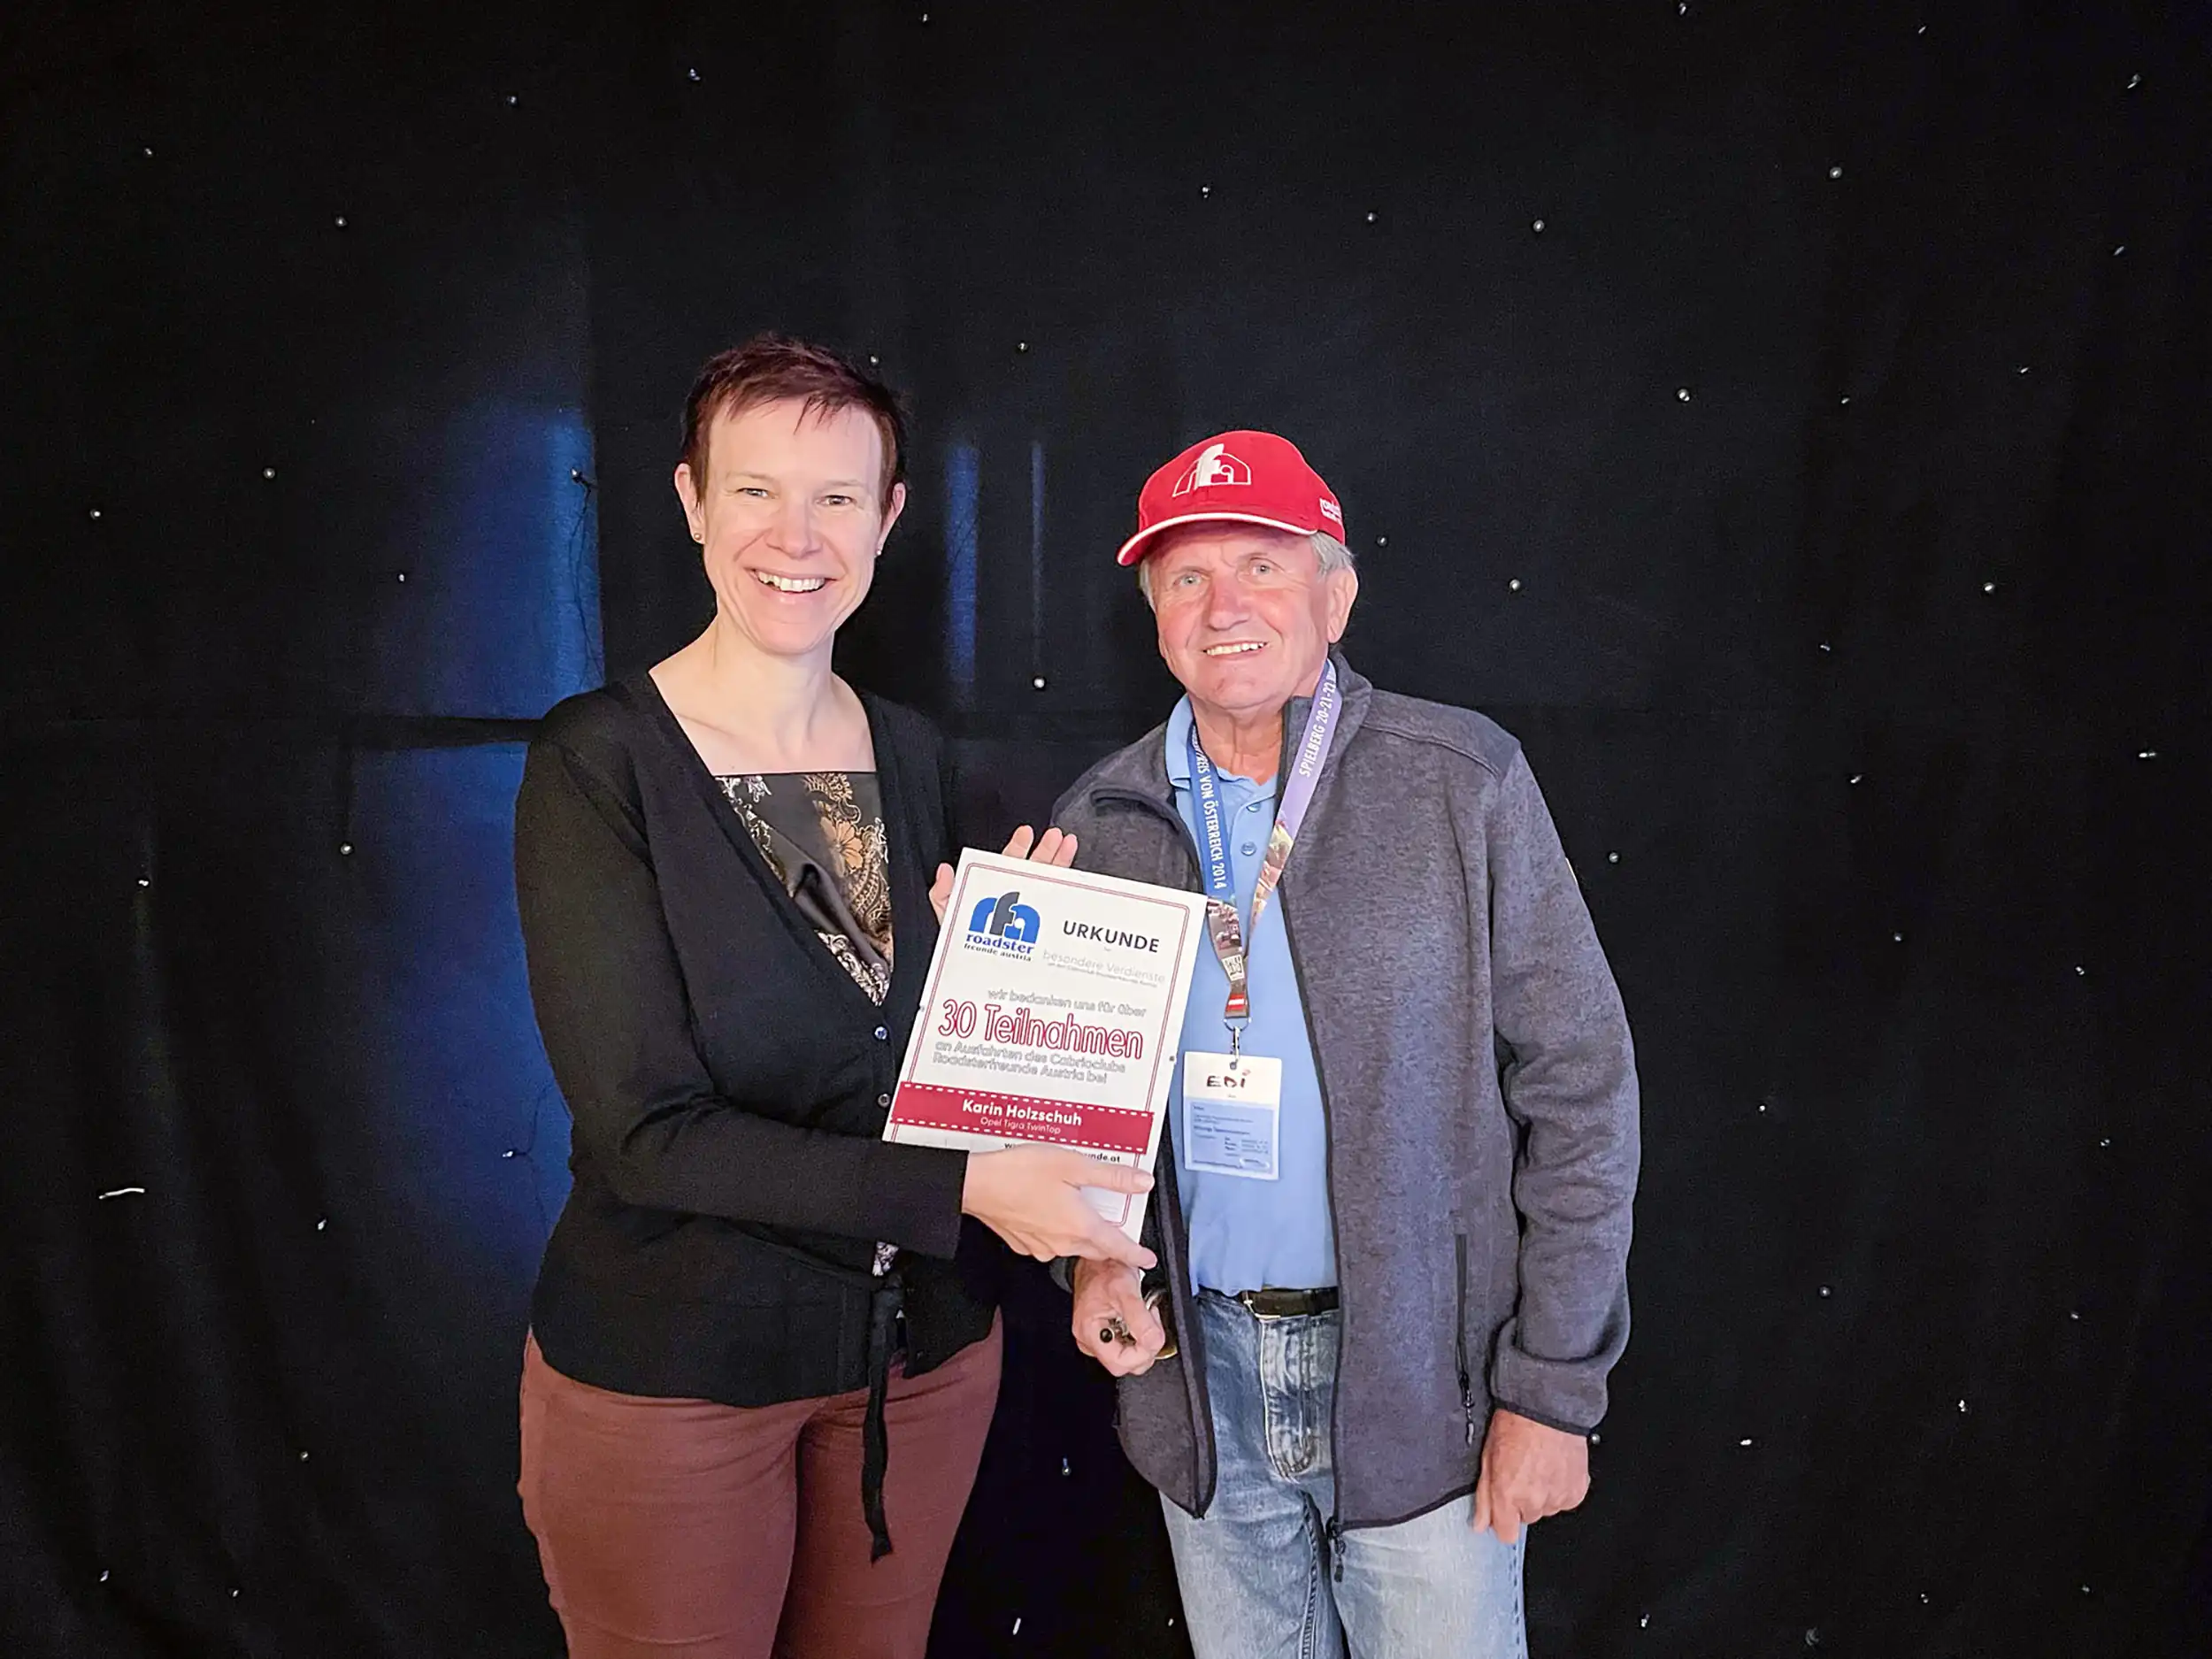 Ehrungen: Anlässlich von mehr als 30 Teilnahmen wurde Karin Holzschuh im Zuge der Saison-Abschlussfeierlichkeiten die Ehrenurkunde der Roadsterfreunde Austria verliehen.